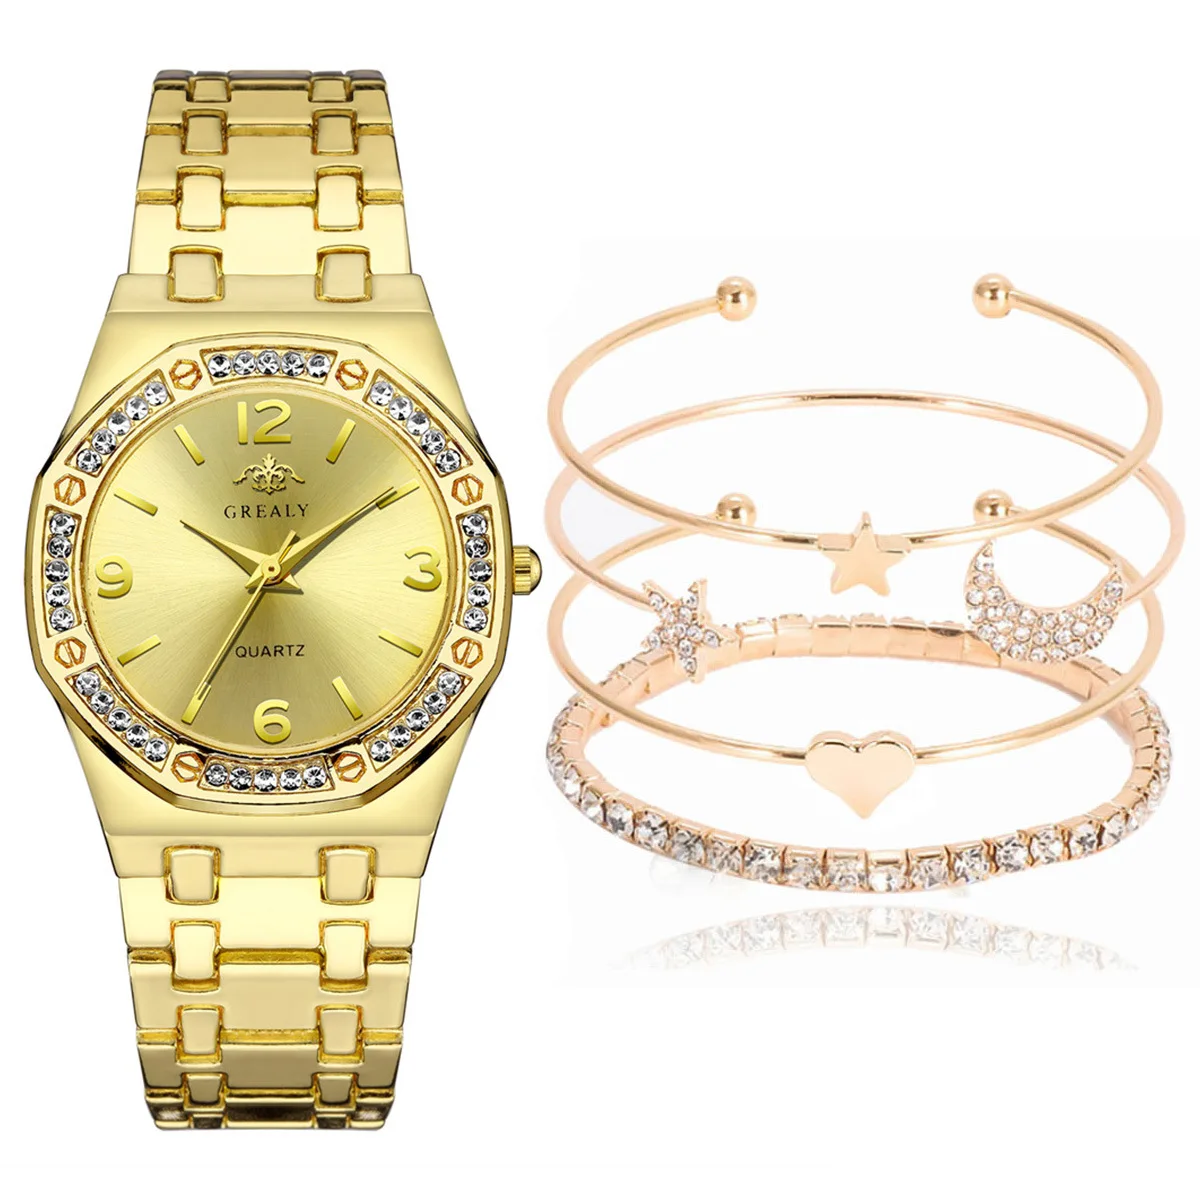 

4419 Women Watch Rose Gold Stainless Steel Analog Quartz Wrist Watches Bracelet Set Jam Tangan Wanita, 3 color as photo